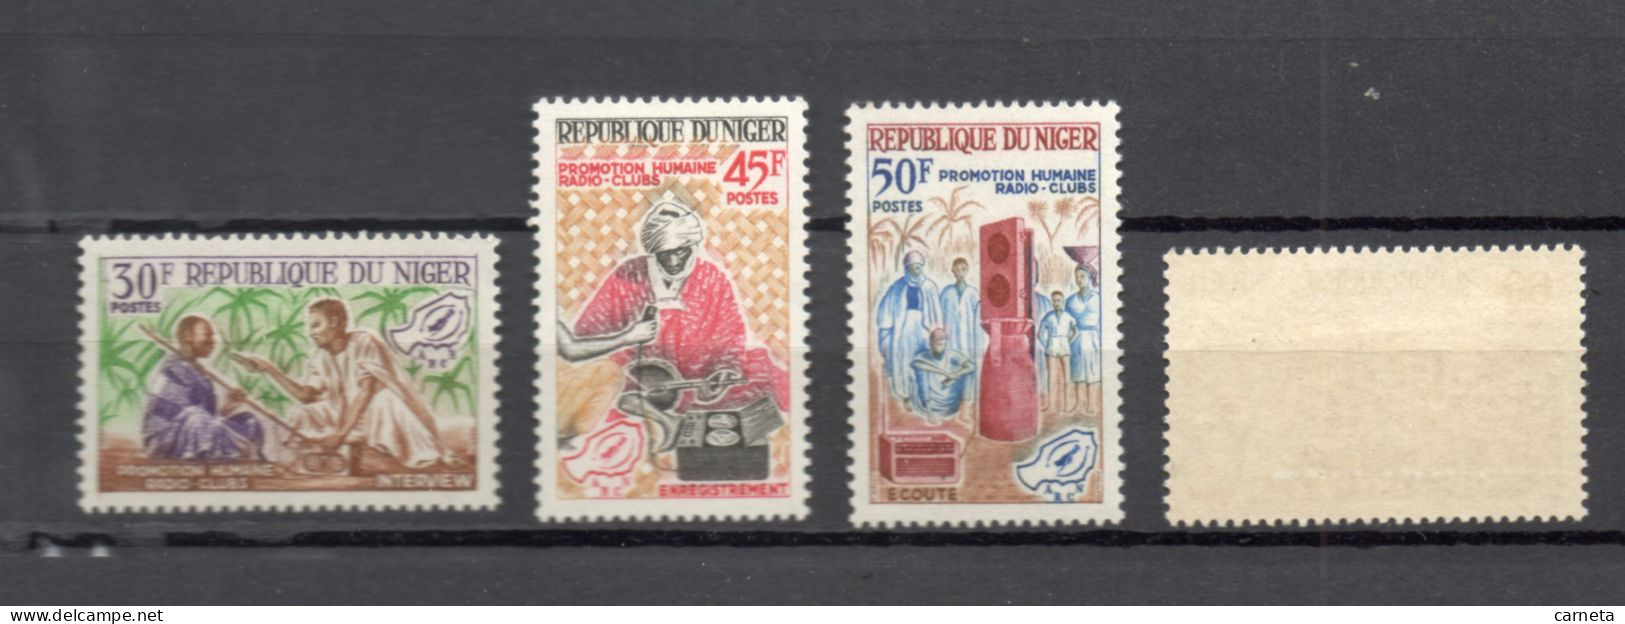 NIGER N° 169 à 172   NEUFS SANS CHARNIERE  COTE 4.00€    PROMOTION HUMAINE  VOIR DESCRIPTION - Niger (1960-...)